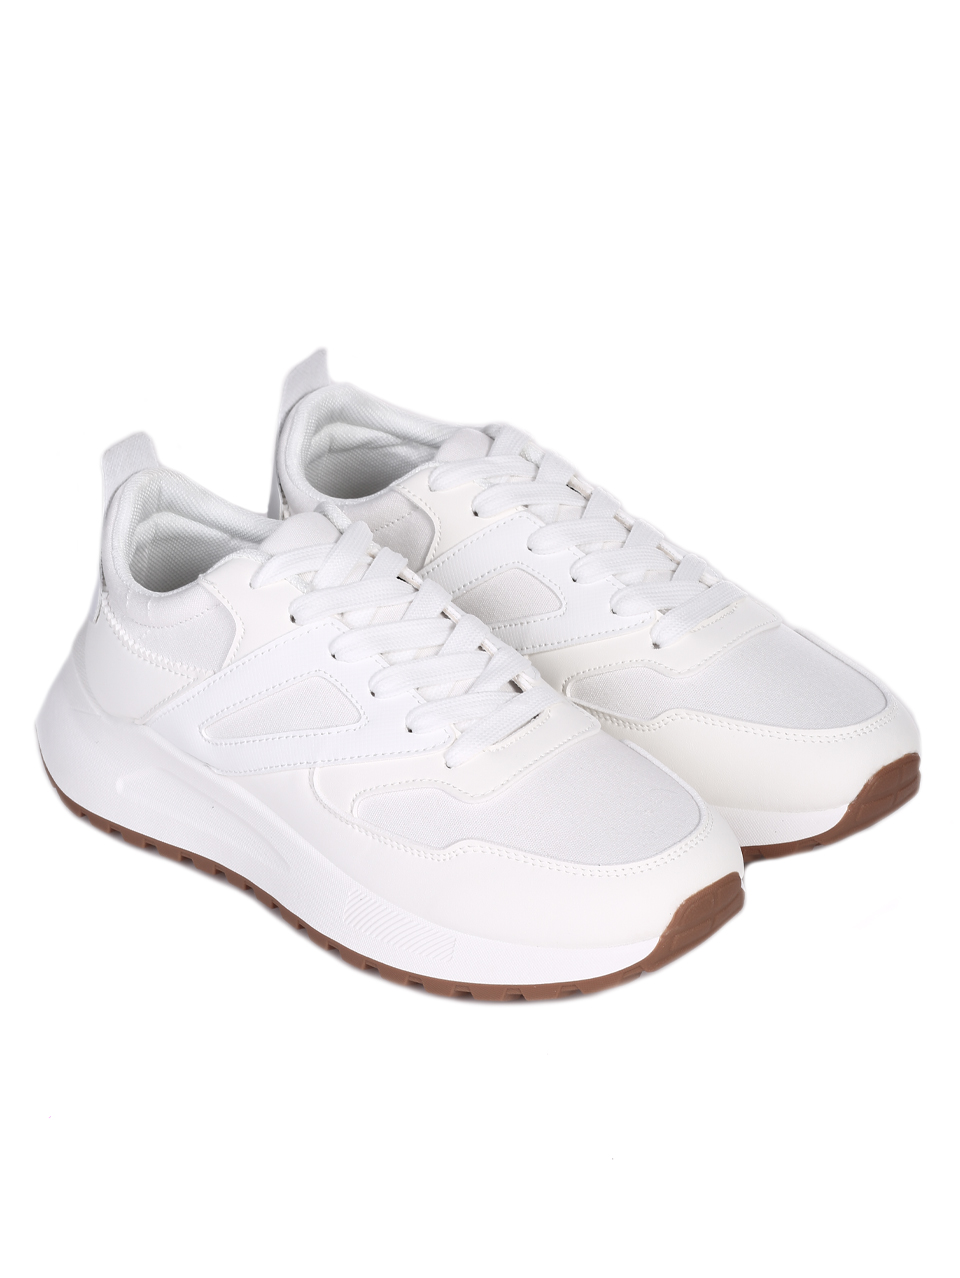 Ежедневни мъжки комфортни обувки в бяло 7U-24084 white